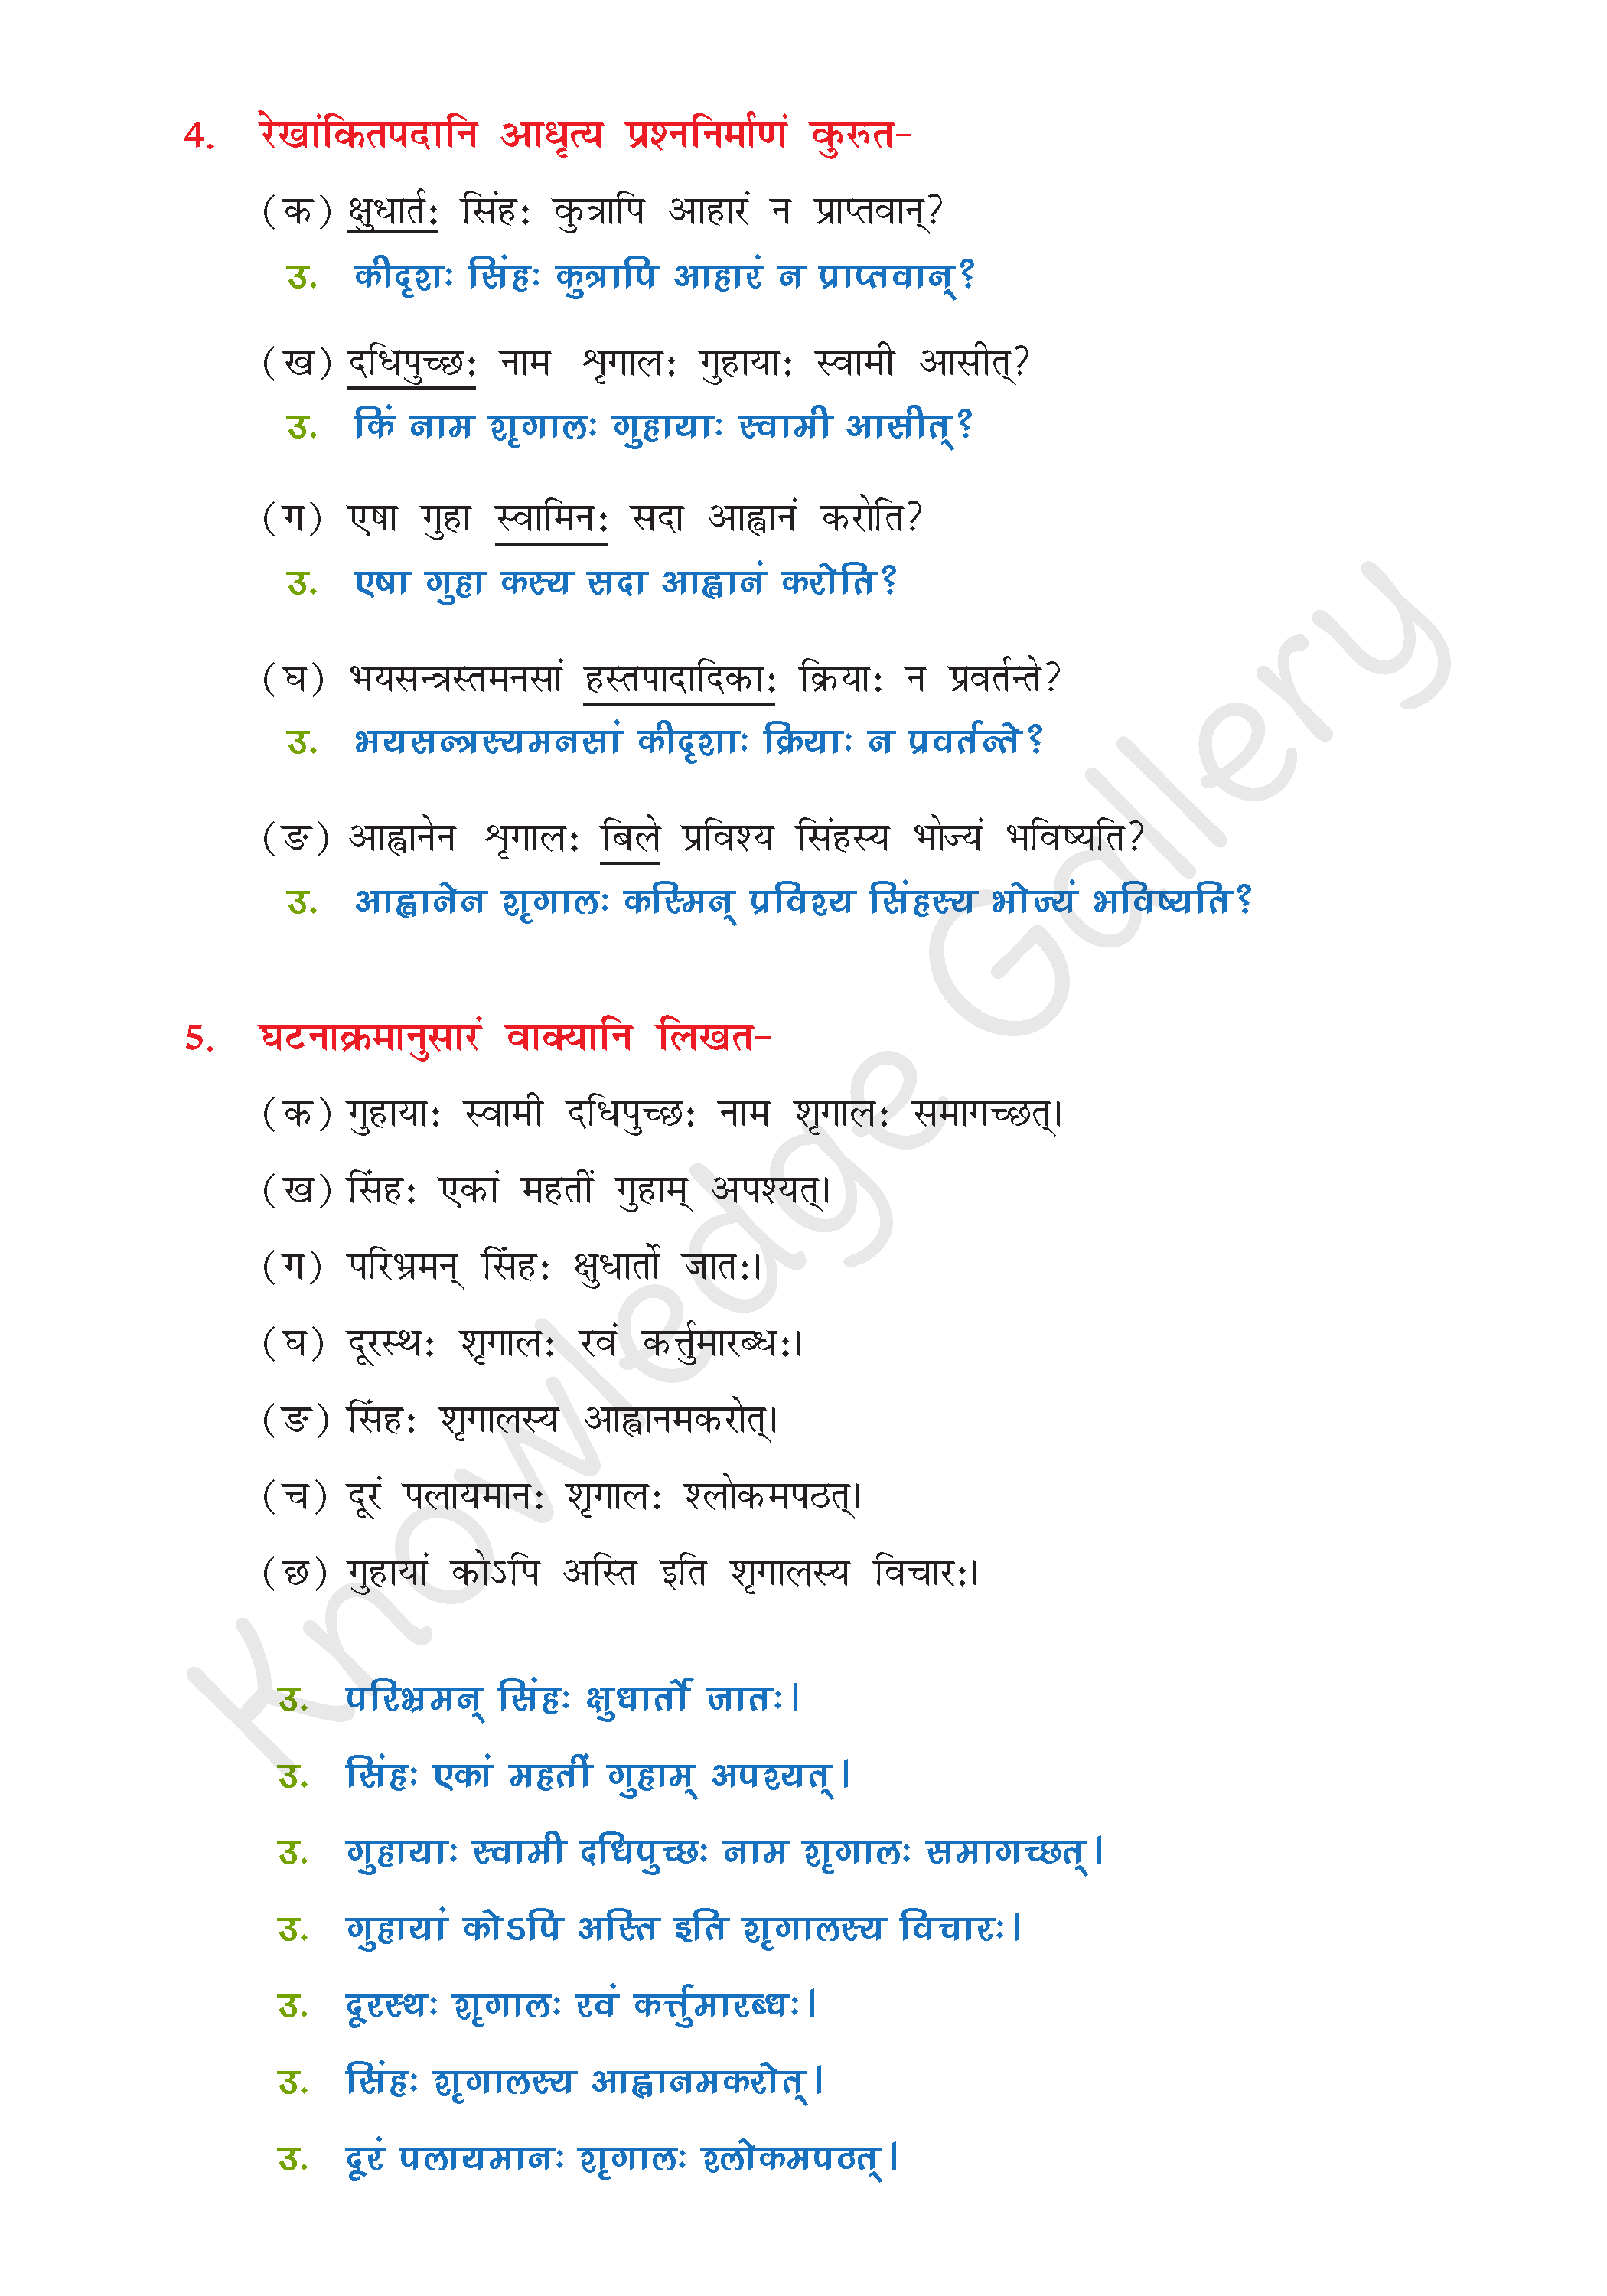 NCERT Solution For Class 8 Sanskrit Chapter 2 part 5